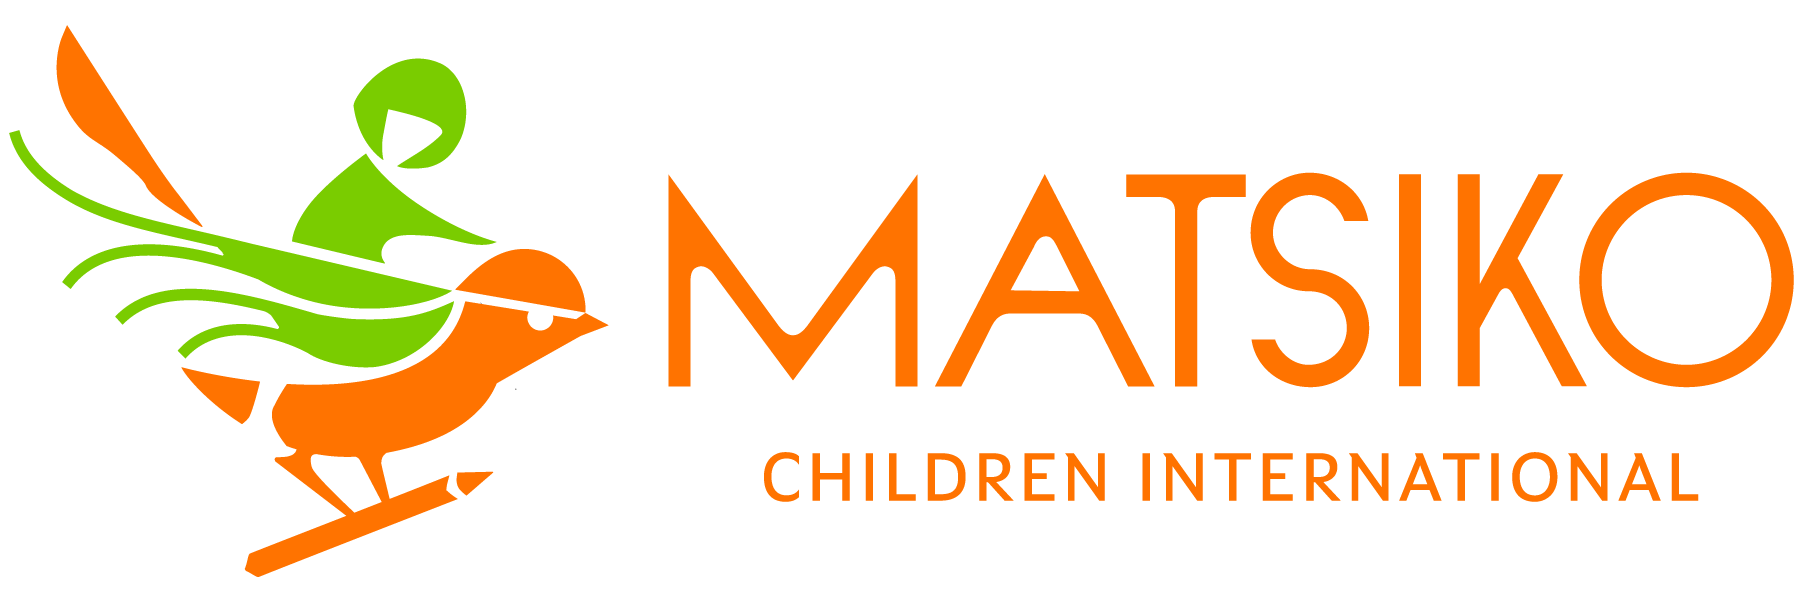 Matsiko Children International: Logo